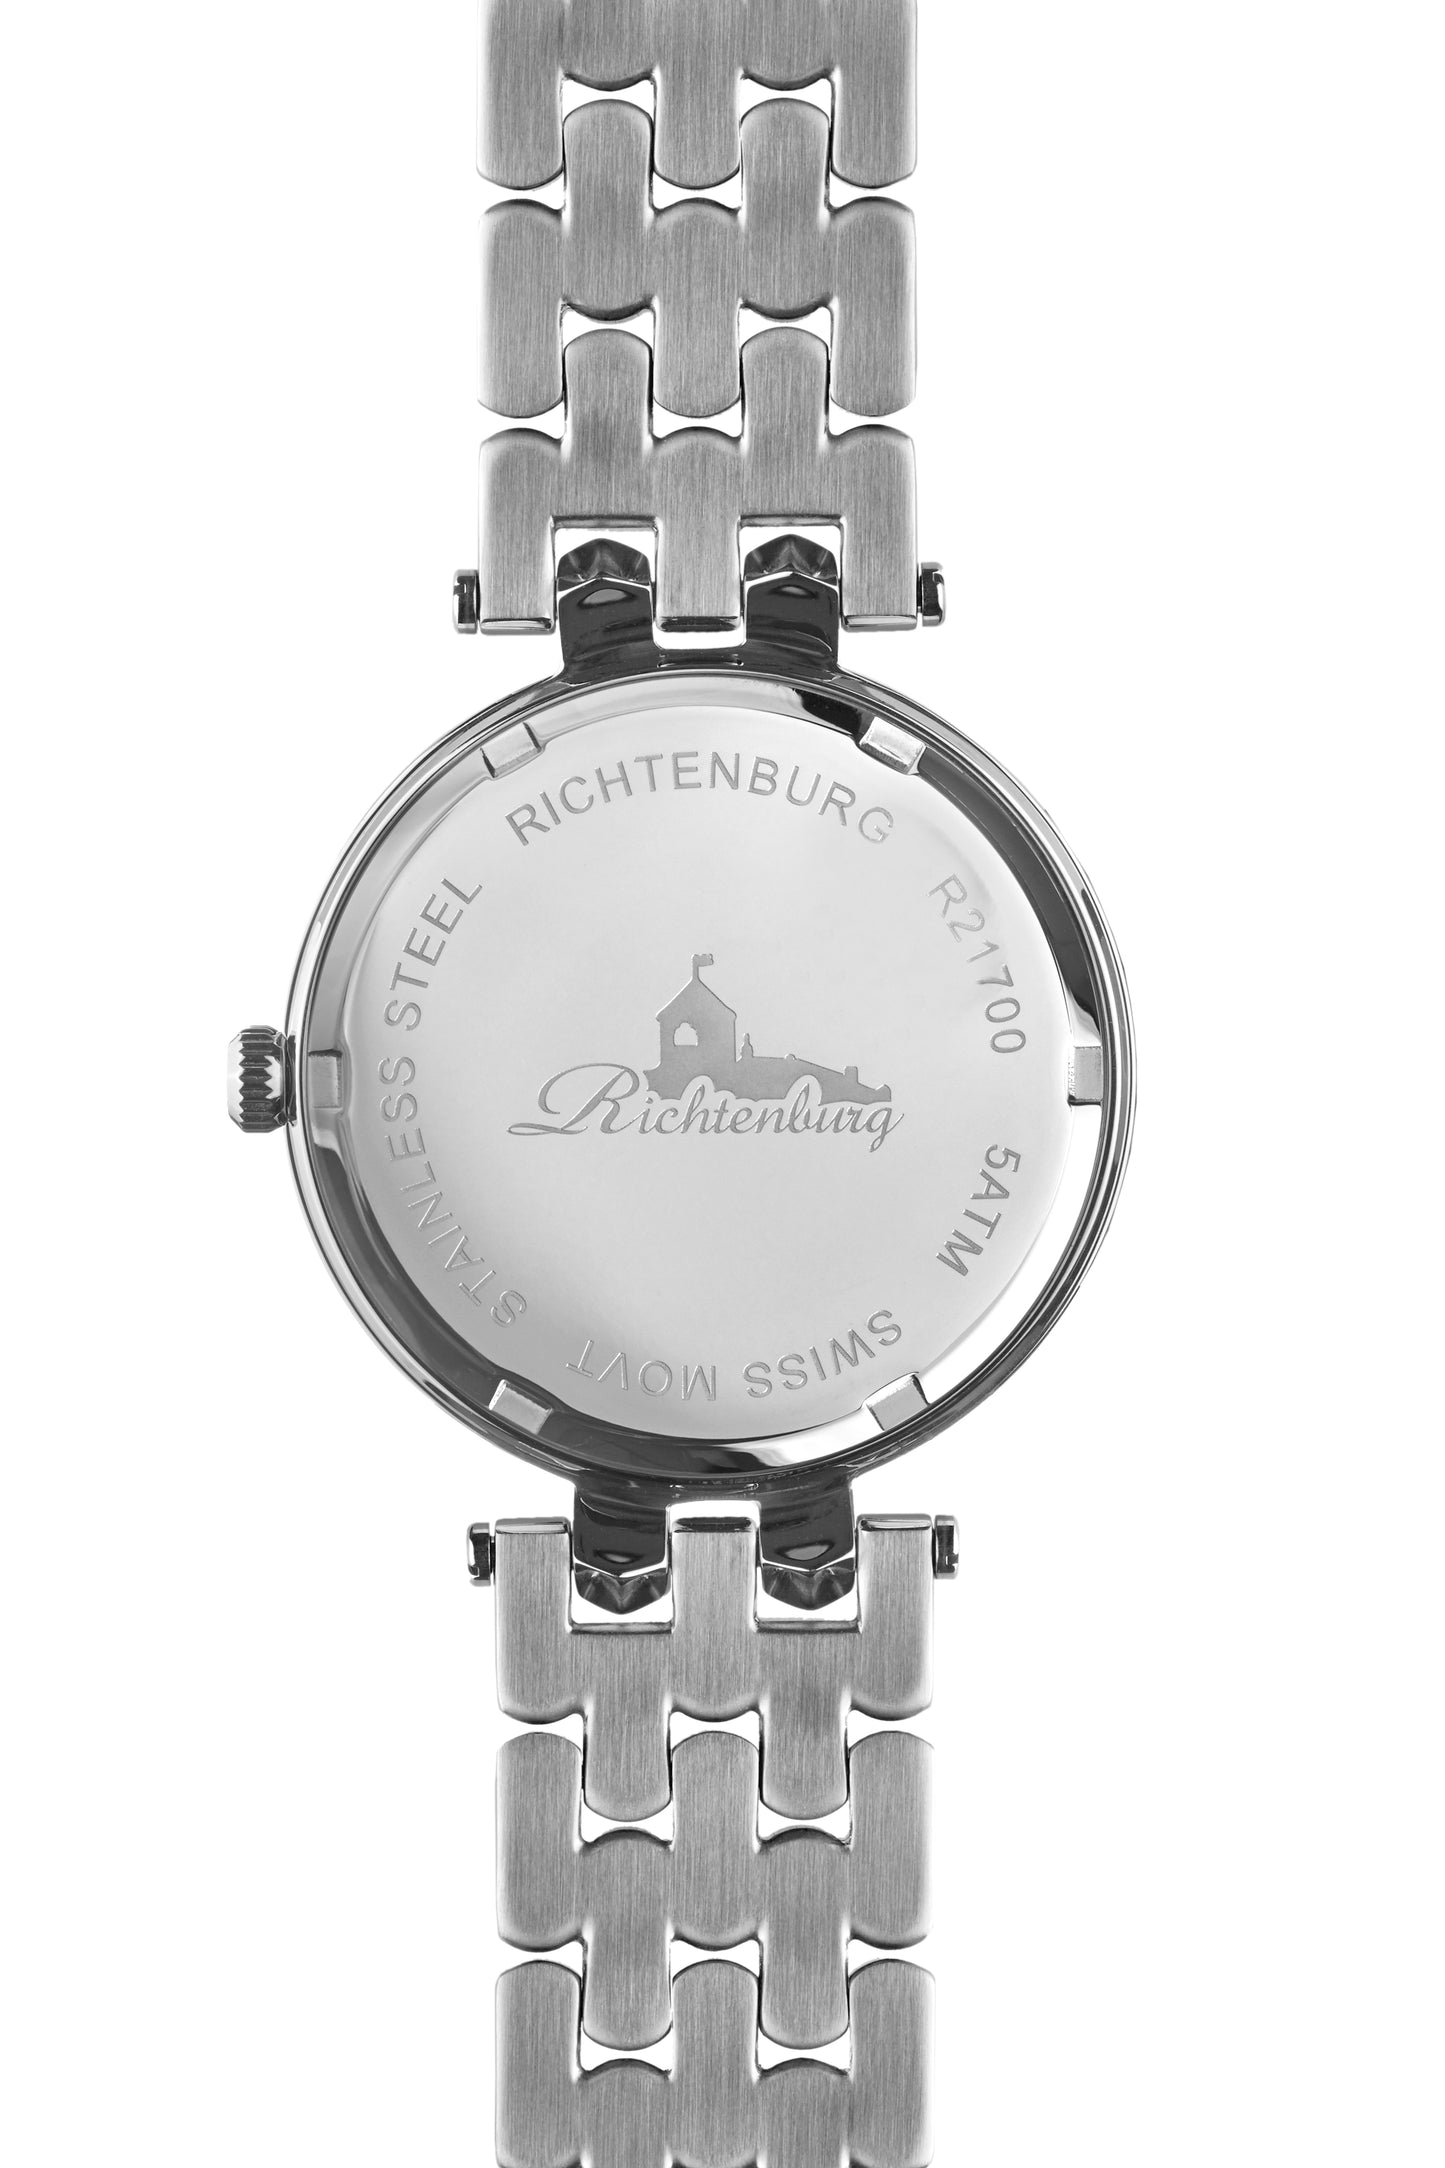 Automatic watches — Innessa — Richtenburg — steel 